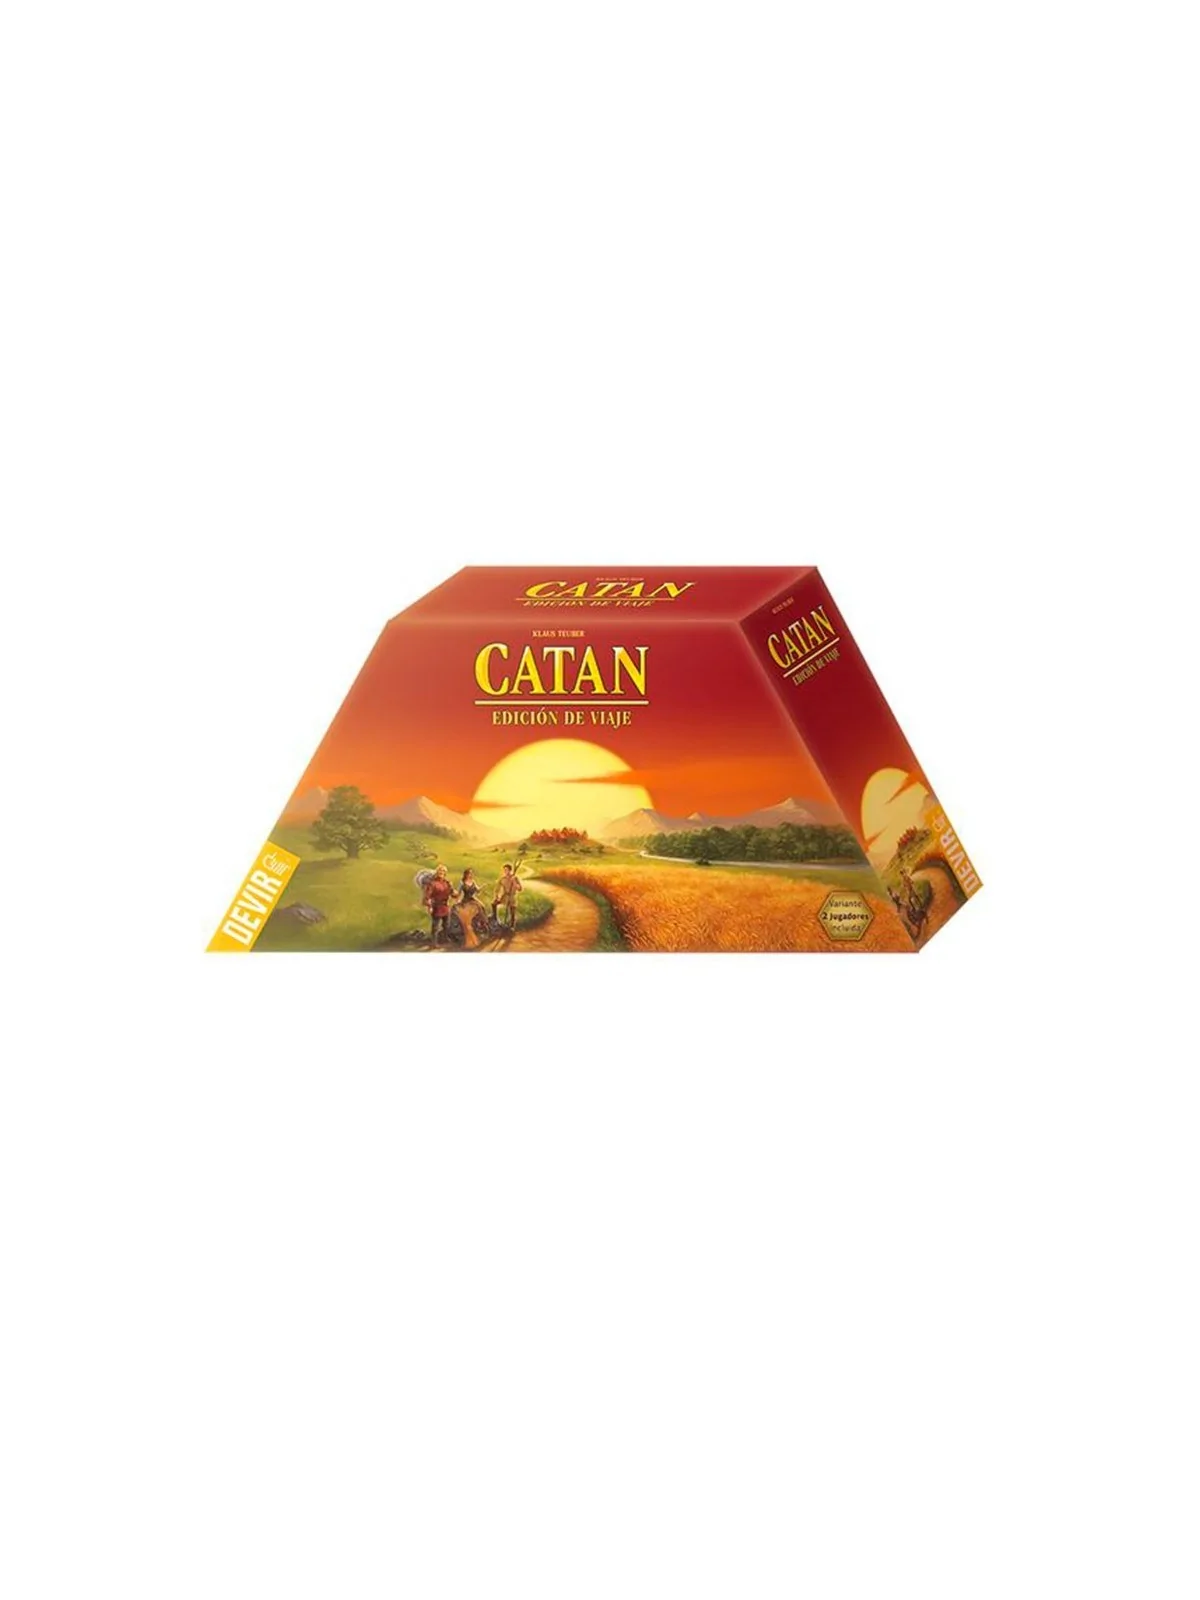 Comprar Catan: Edición de Viaje barato al mejor precio 31,50 € de Devi